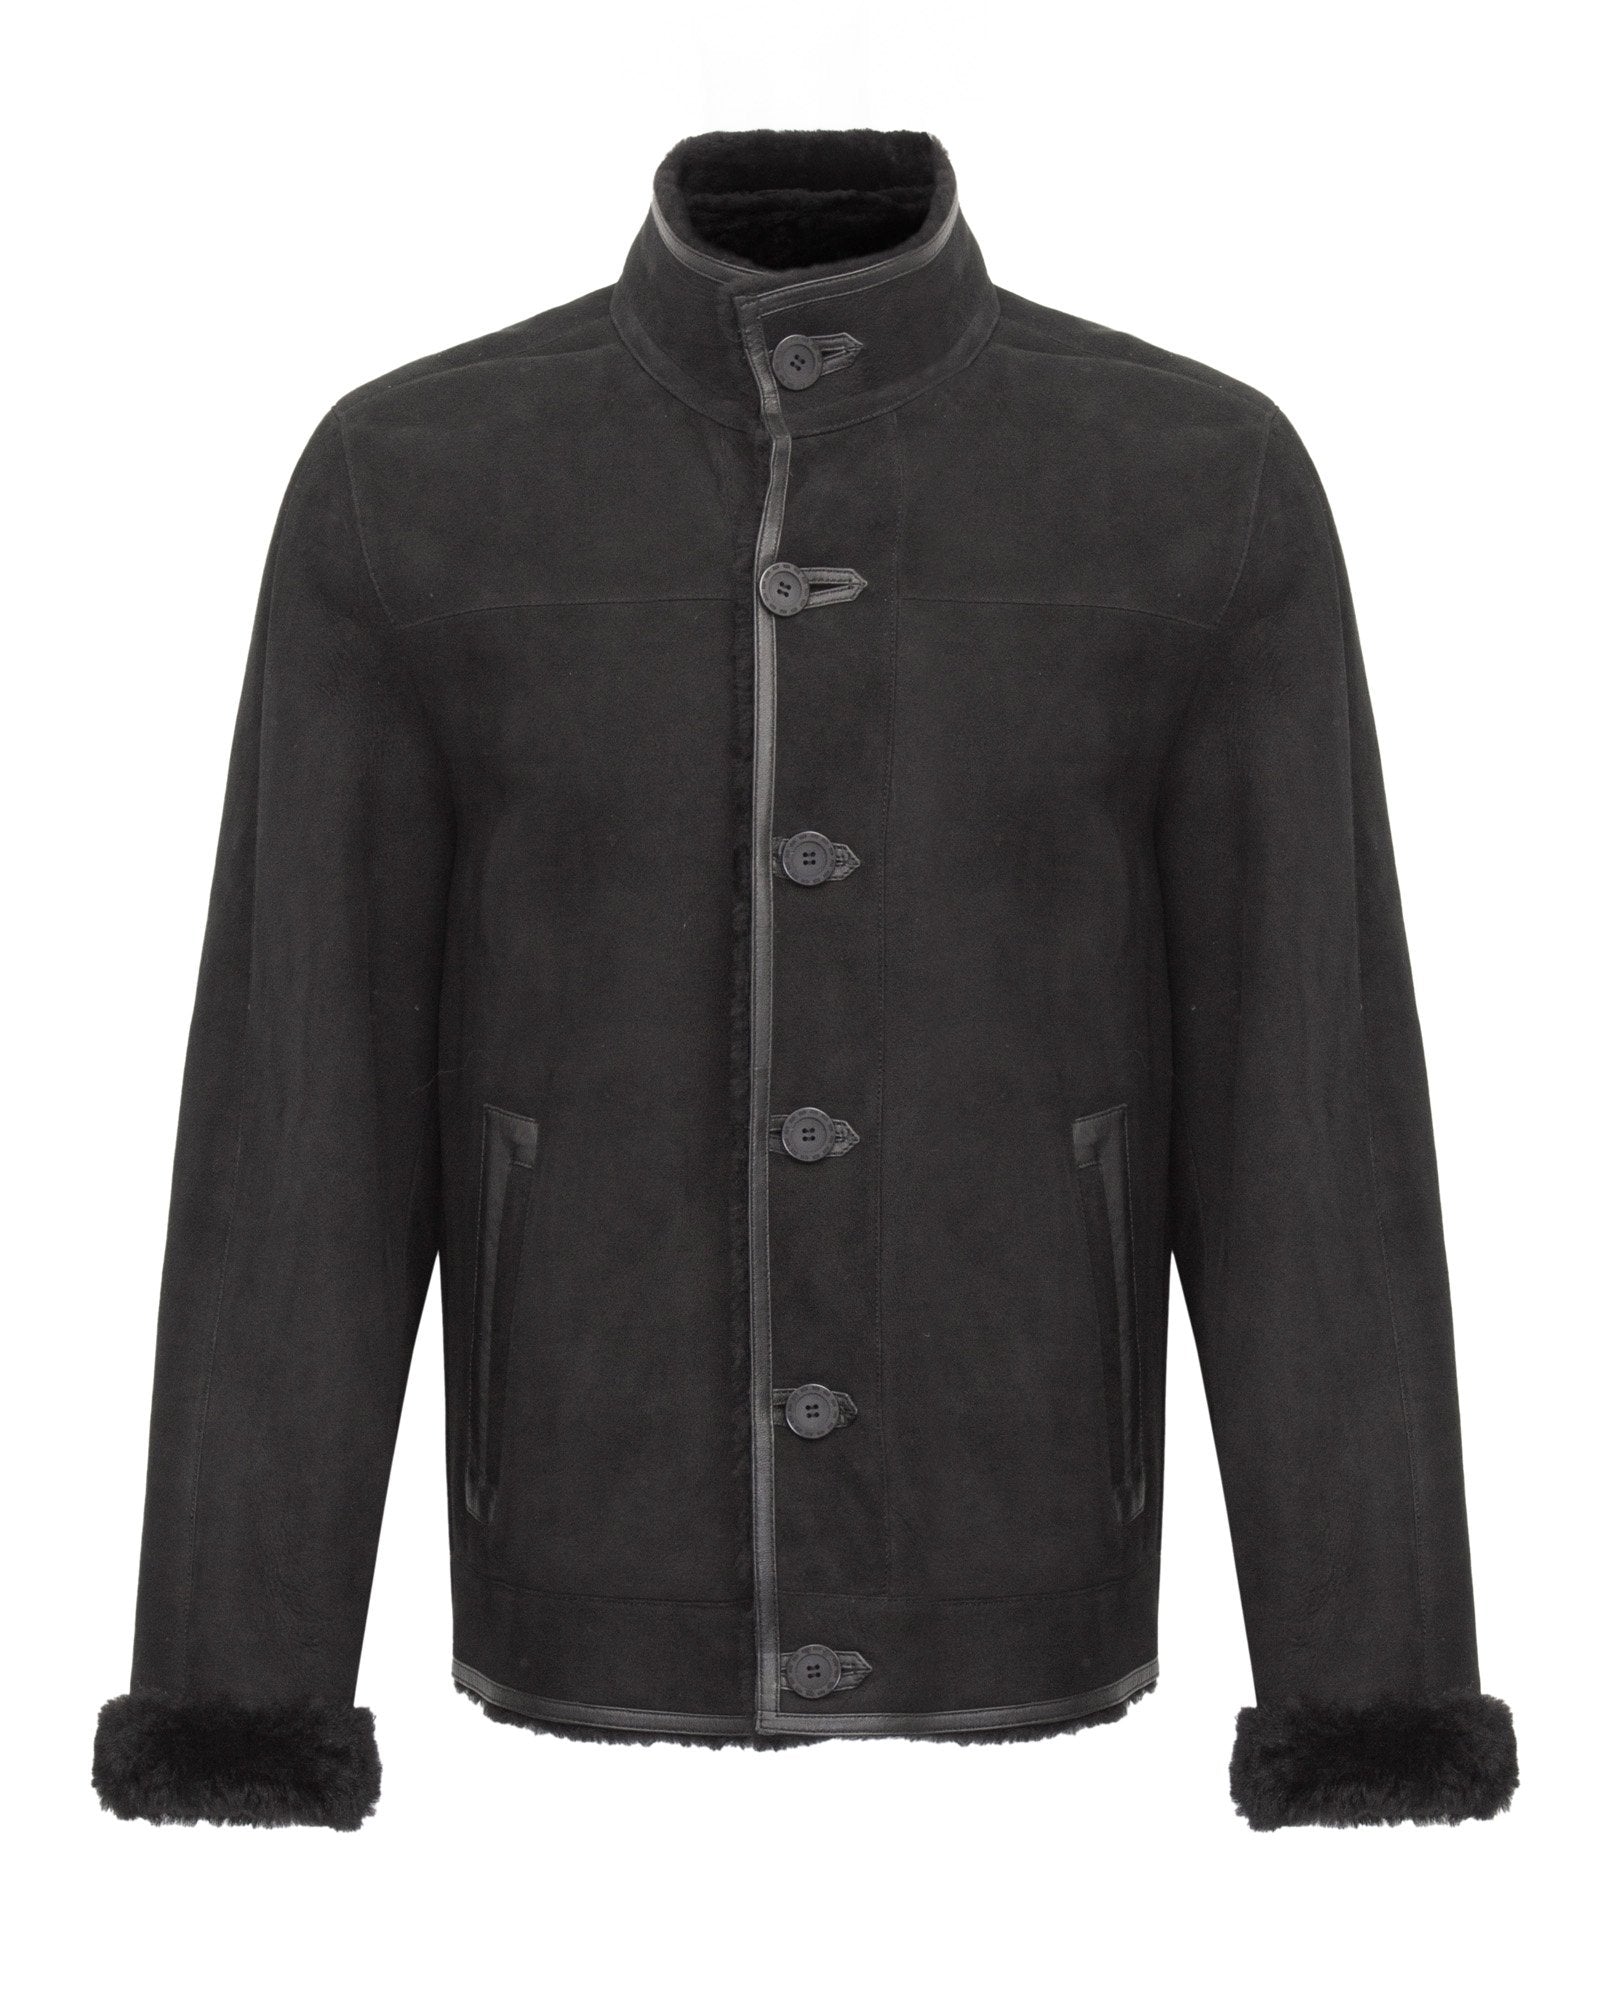 Black Long Leather Jacket